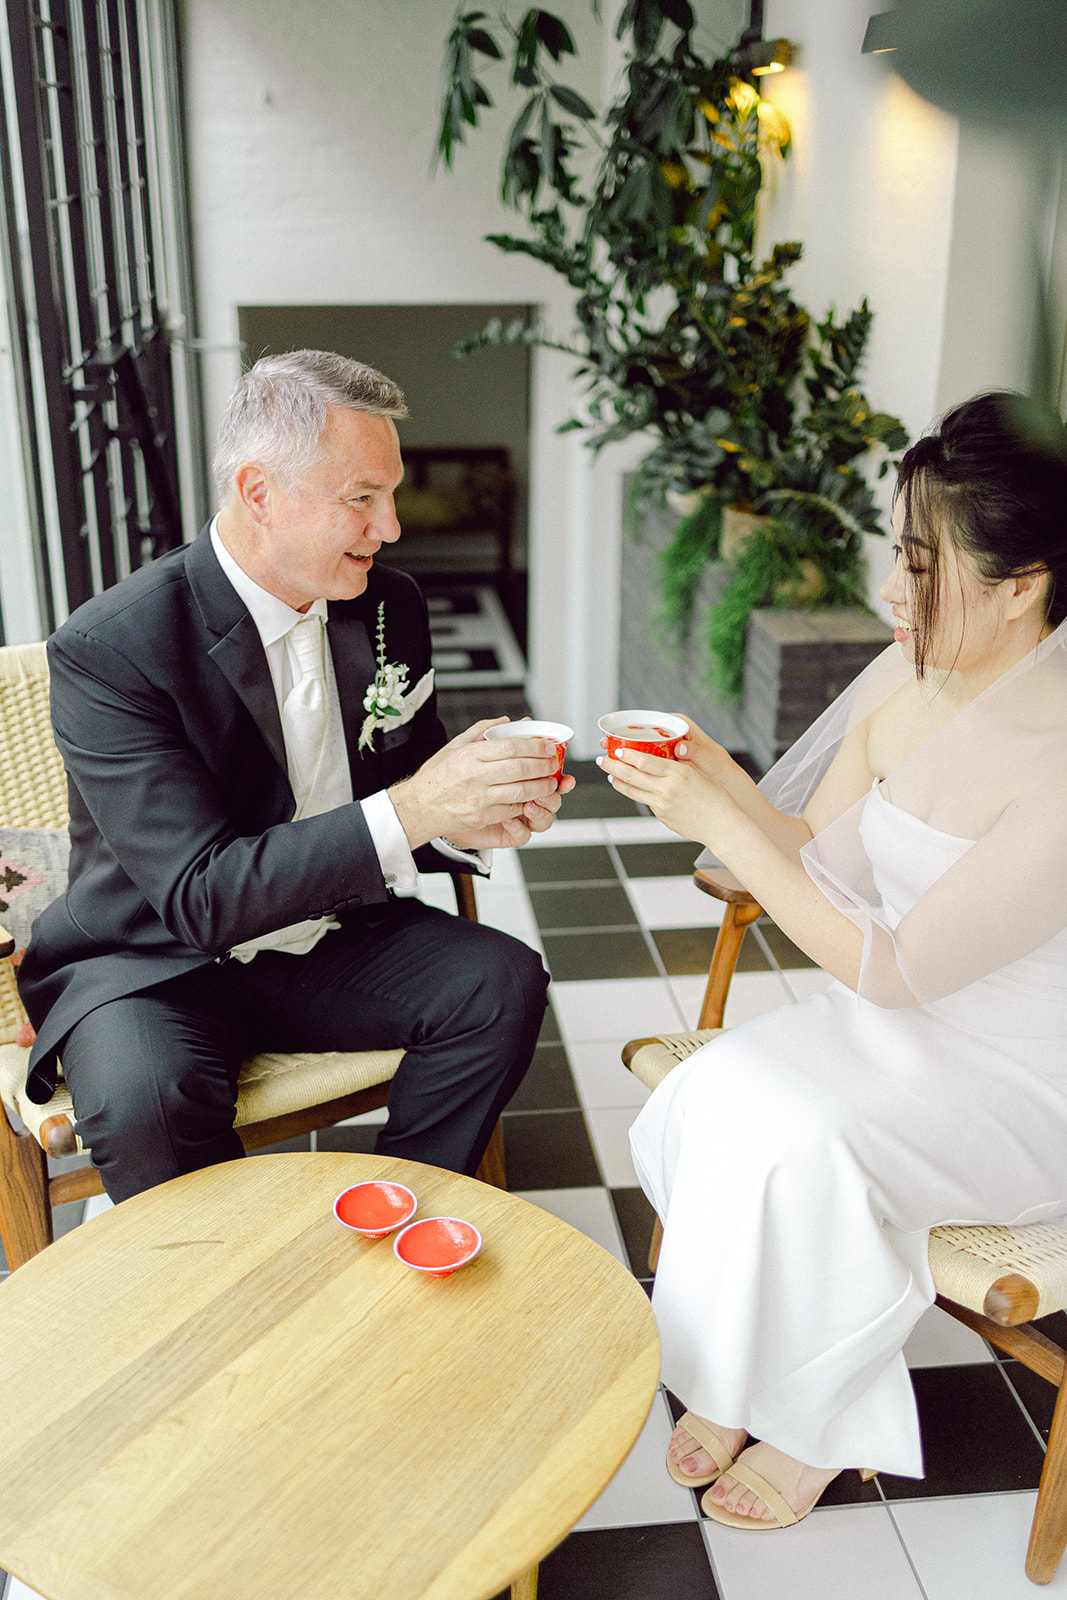 tea ceremony in Hotel kong arthur bride and groom copenhagen